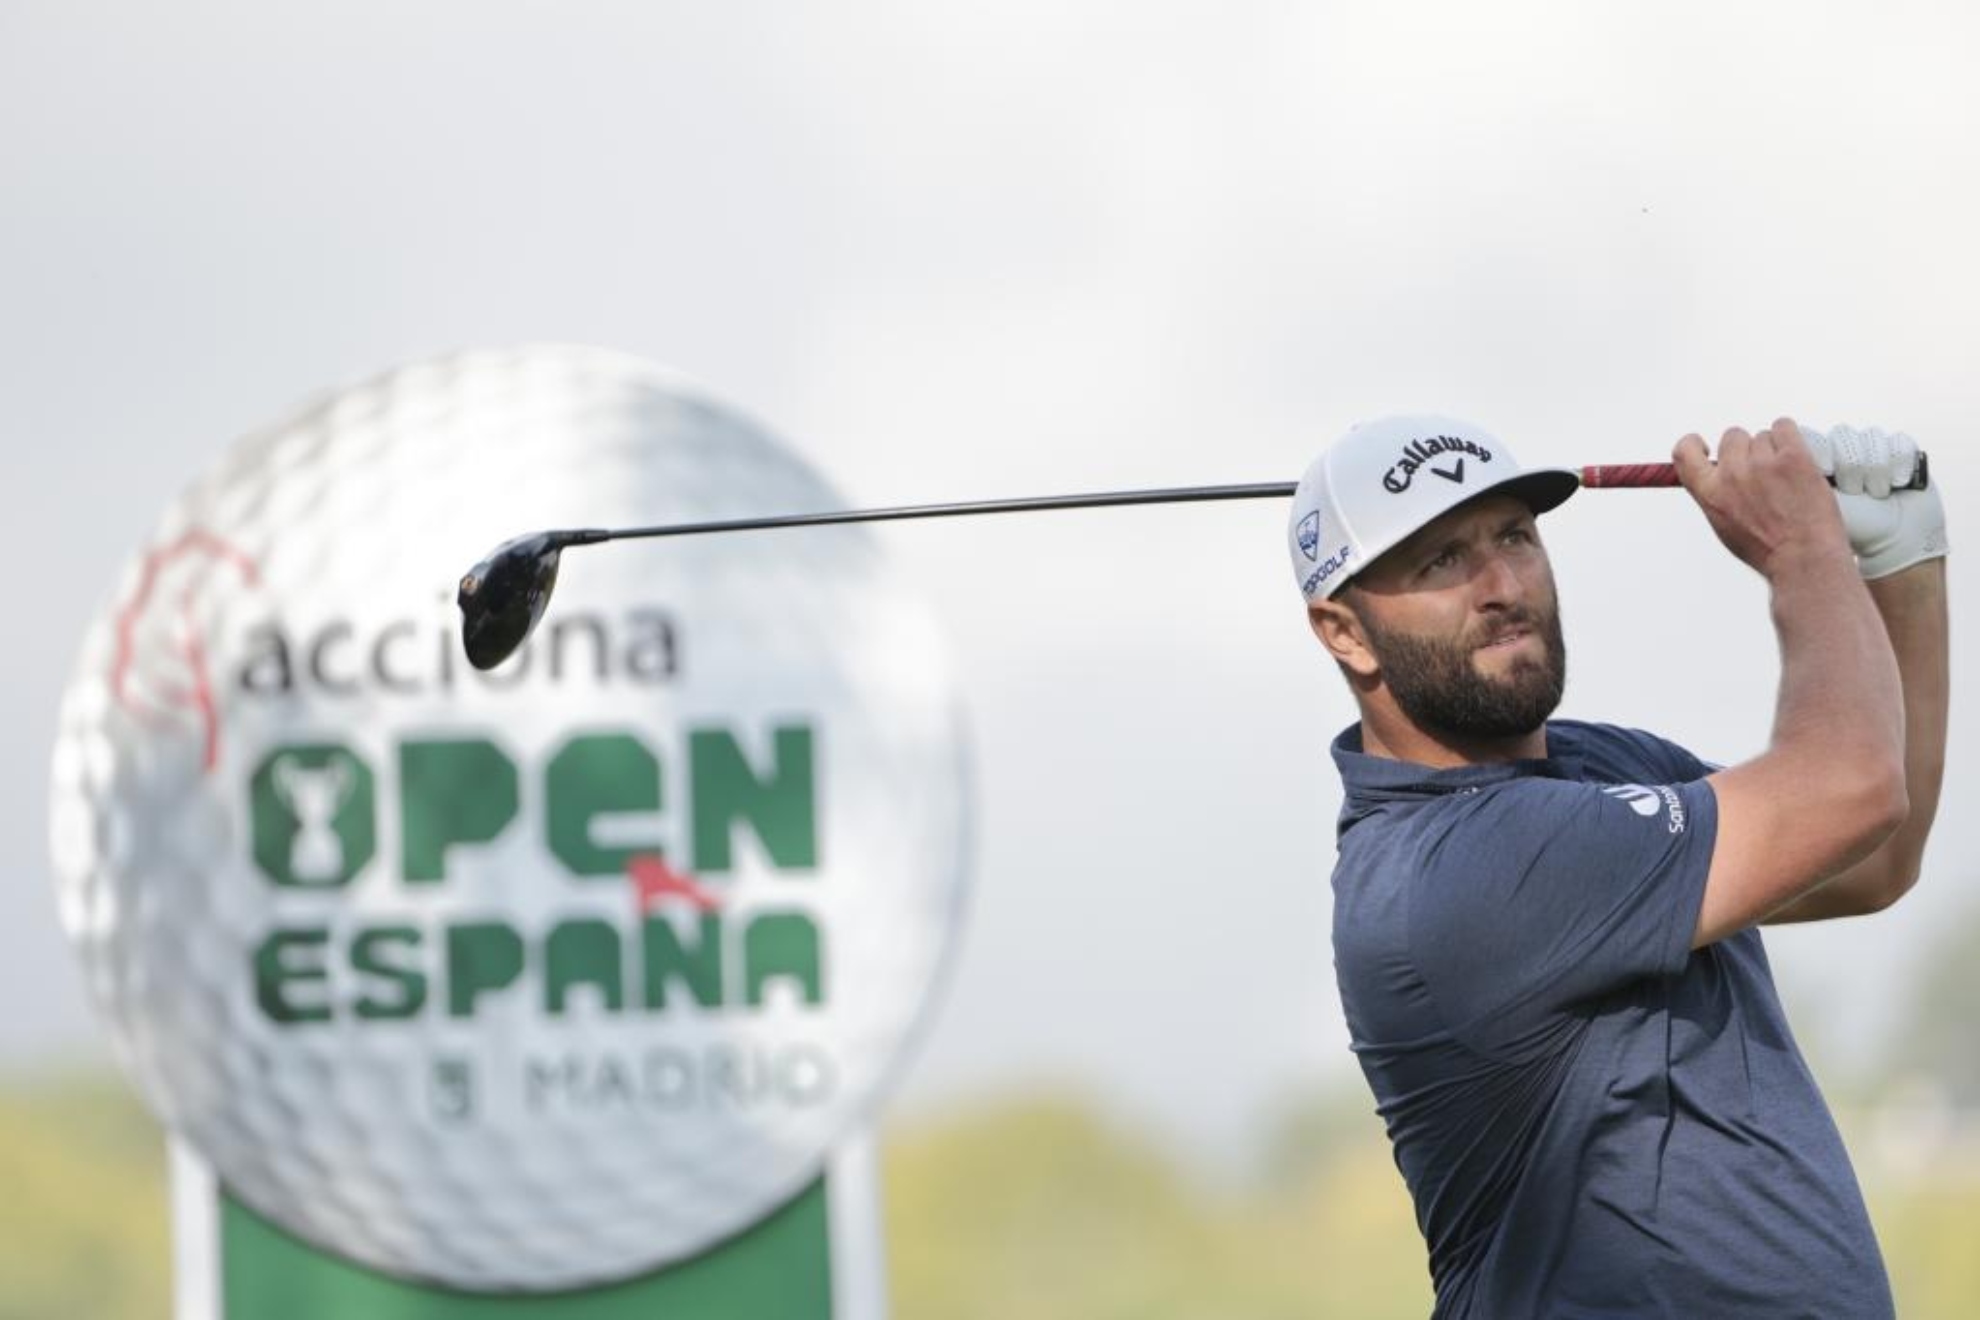 Acciona Open de España de Golf, en directo | Jon Rahm, hoy en vivo